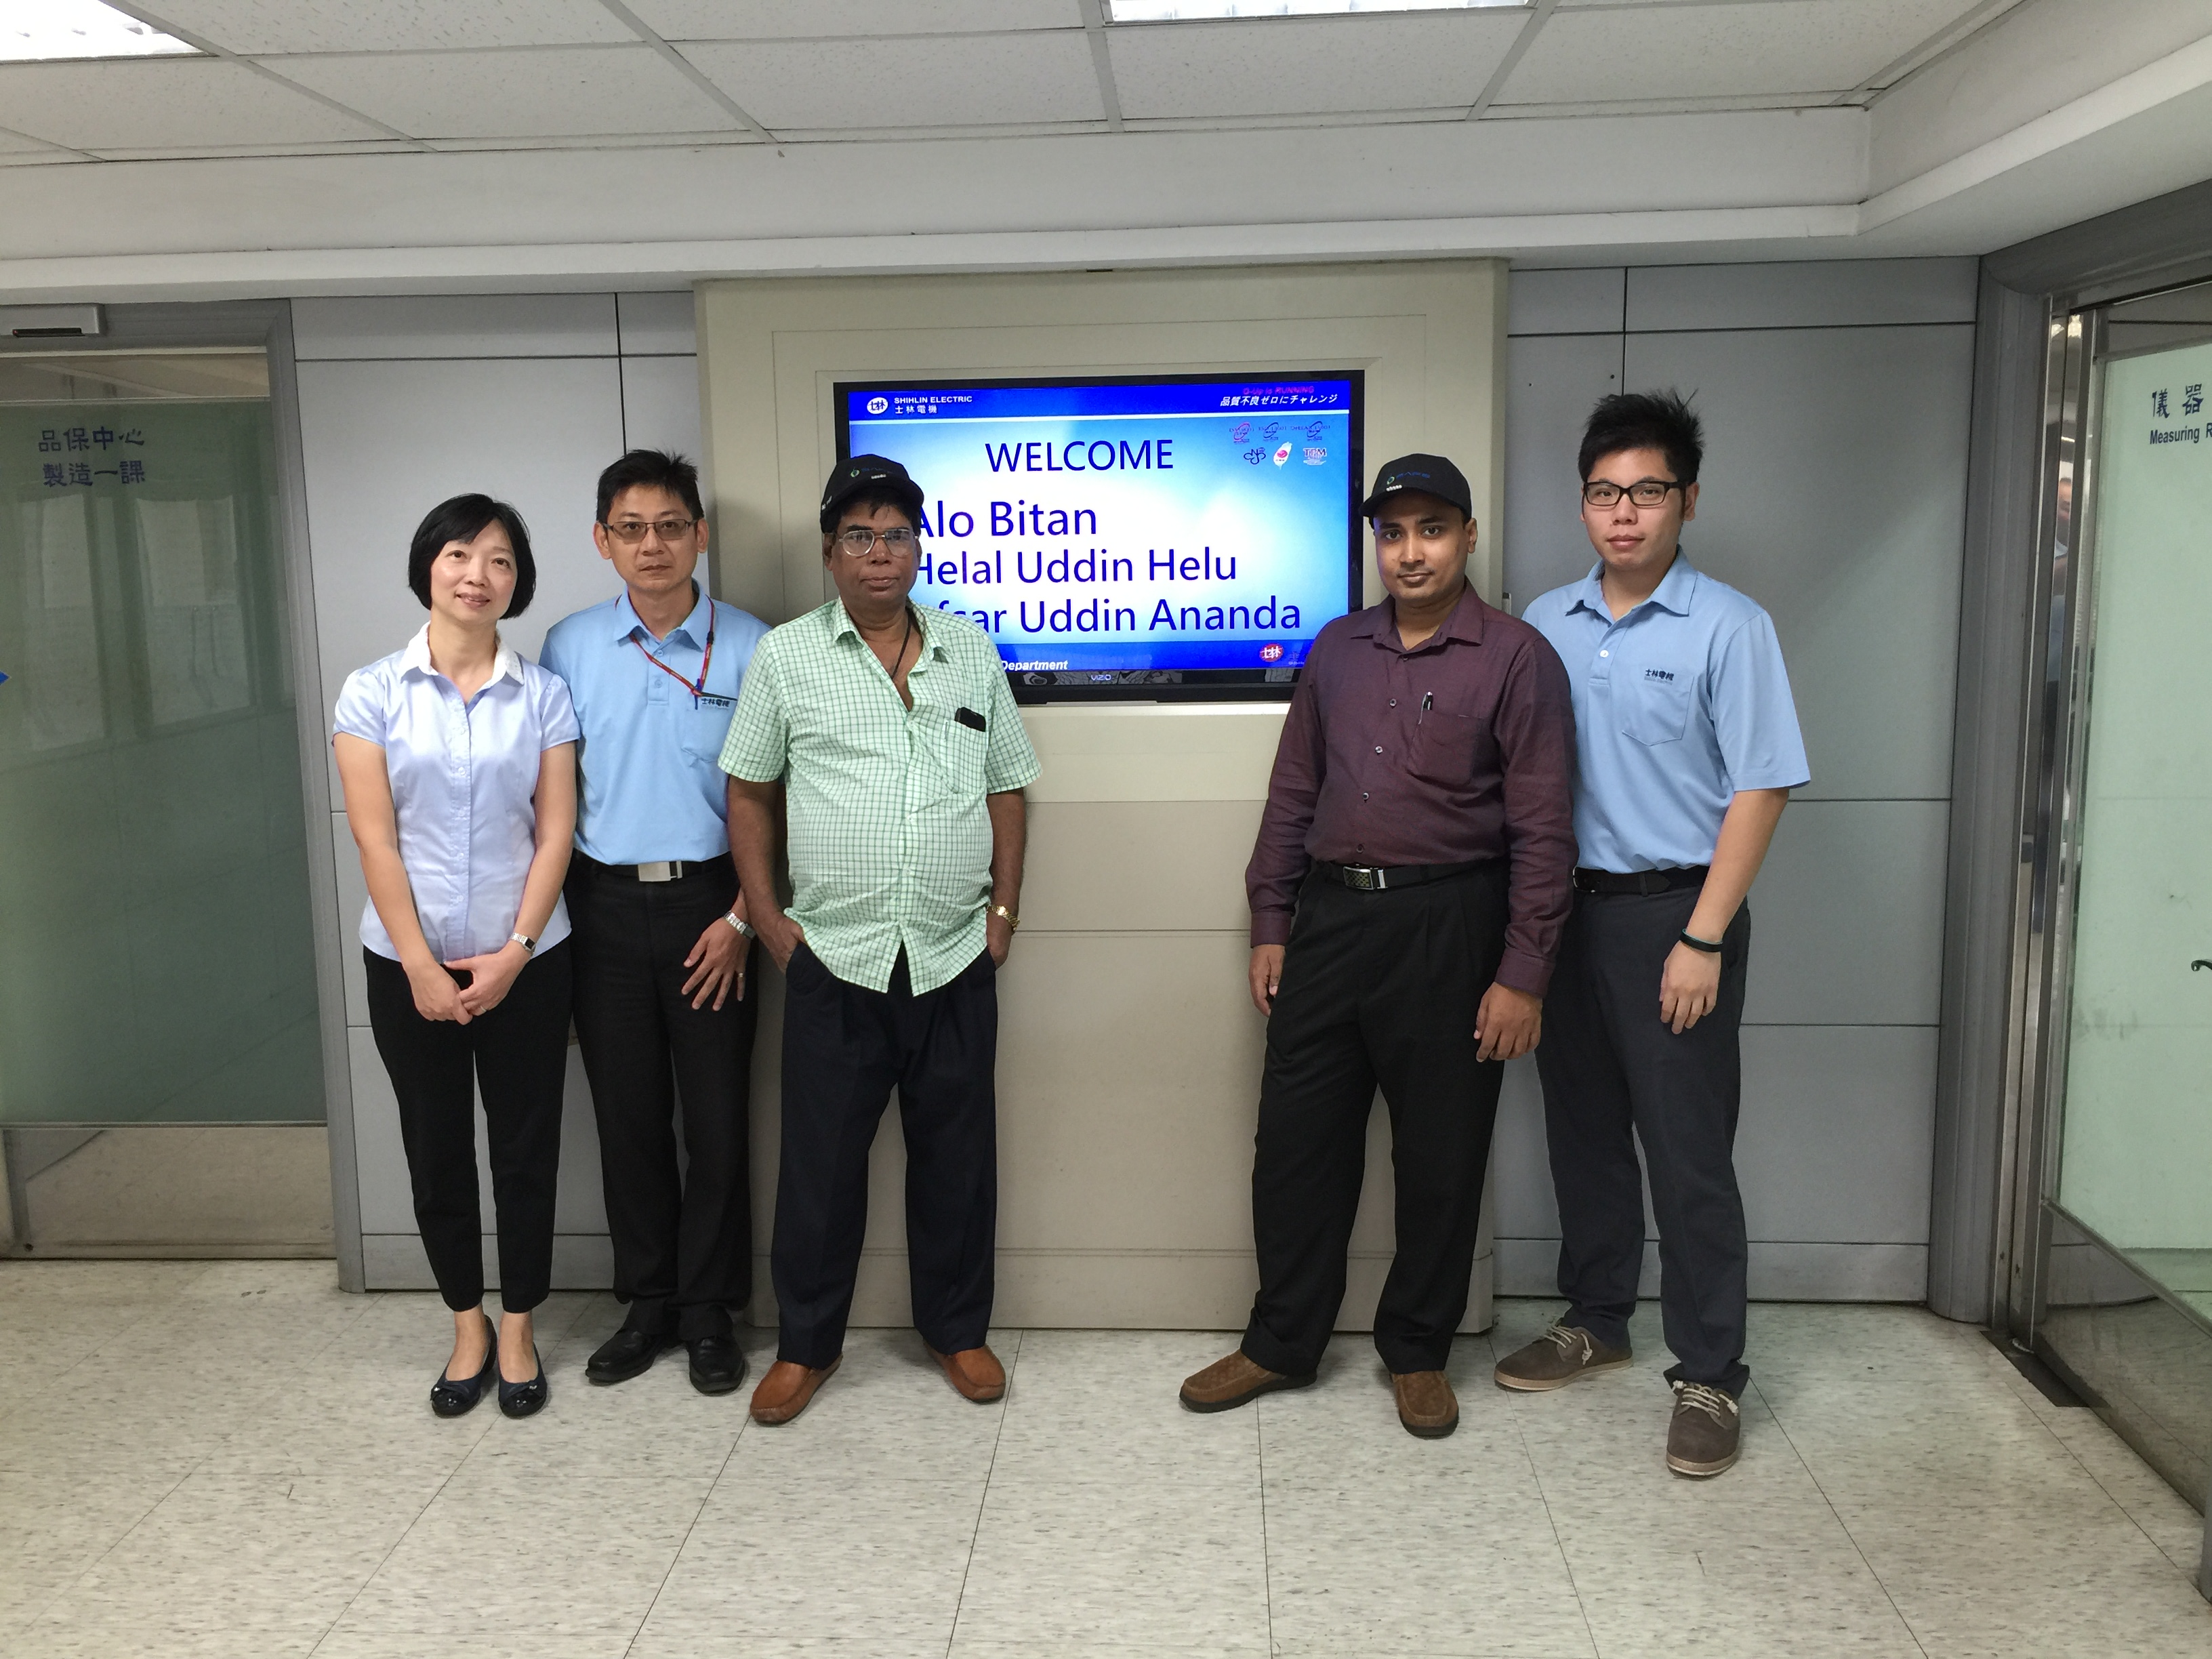 Visita dei clienti del Bangladesh a Shihlin Electric